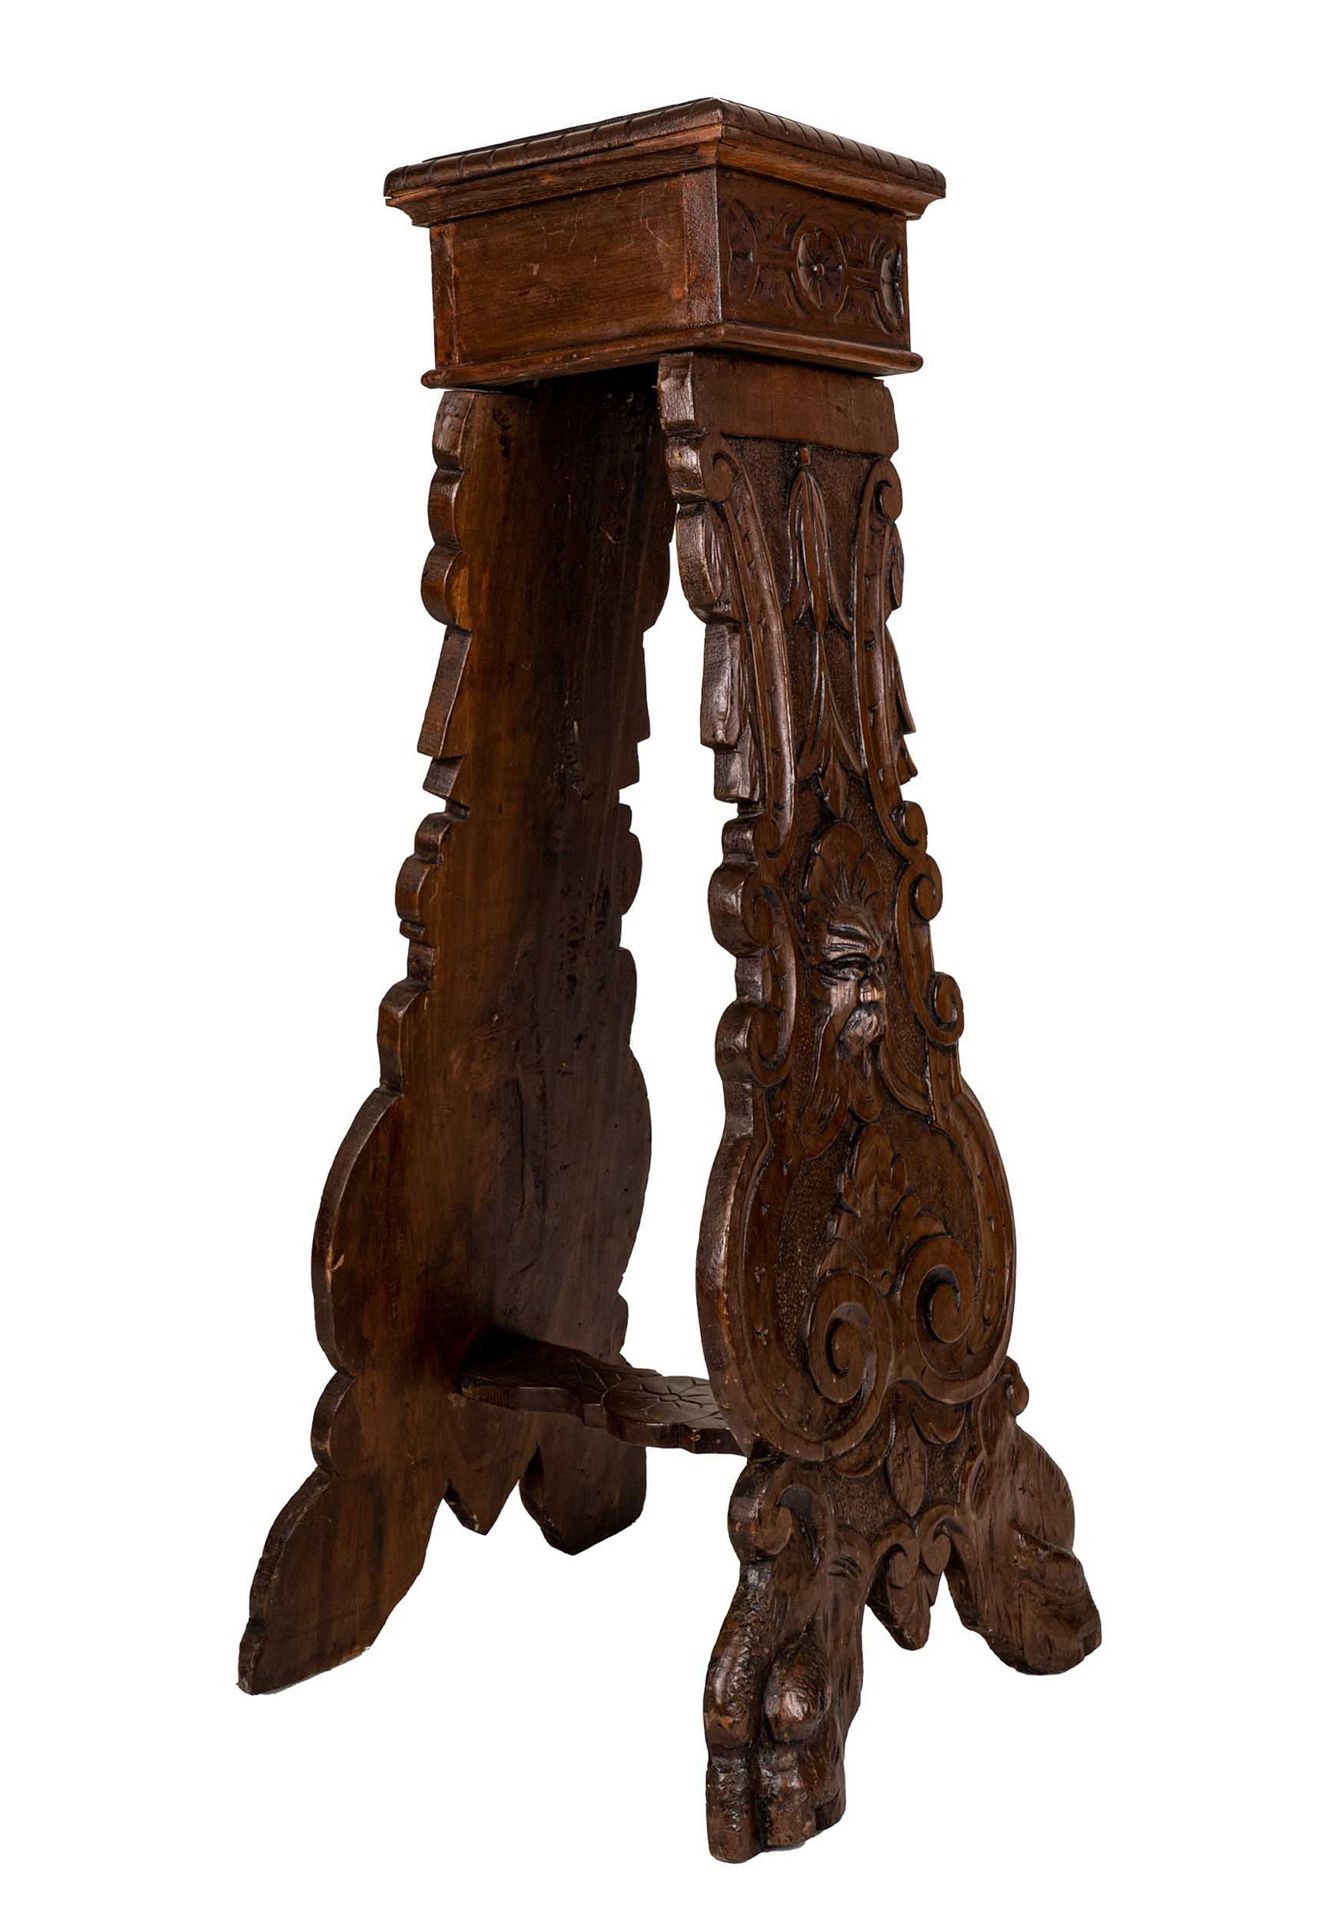 Null 胸部长椅

19世纪末

文艺复兴风格，胡桃木雕刻，方形的上表面有空心的边缘，形状的腿上装饰着植物形态的涡旋，中心是一个面具，脚下是狮子造型的。

高&hellip;